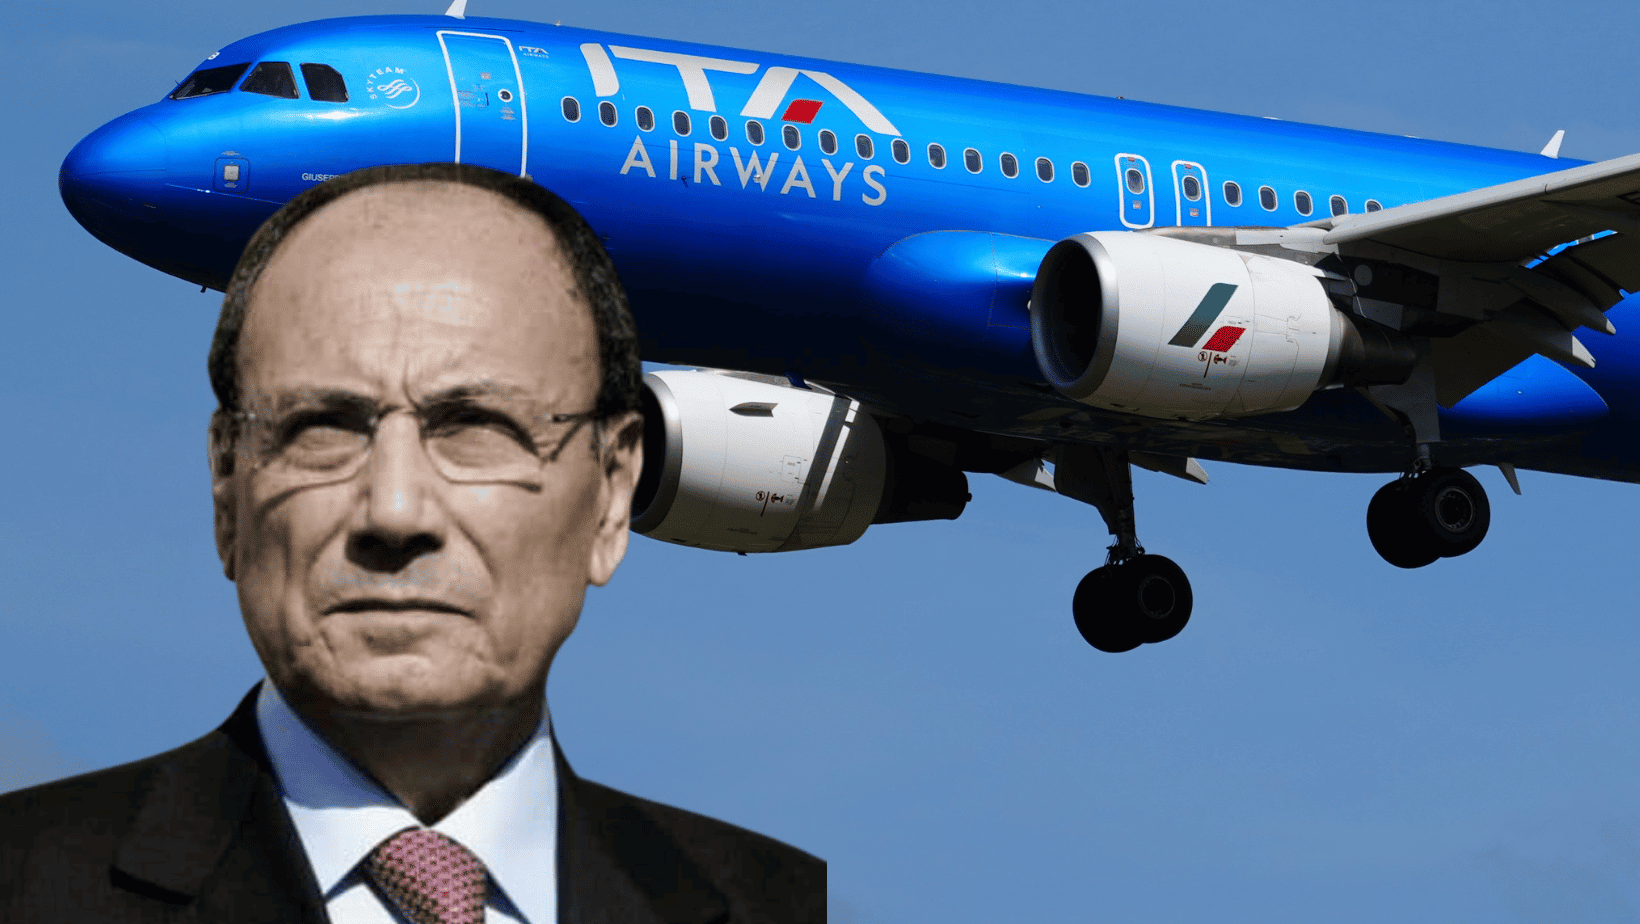 Caro voli, Schifani durissimo contro Ita e Ryanair: “Esiste un cartello scandaloso tra le due compagnie”